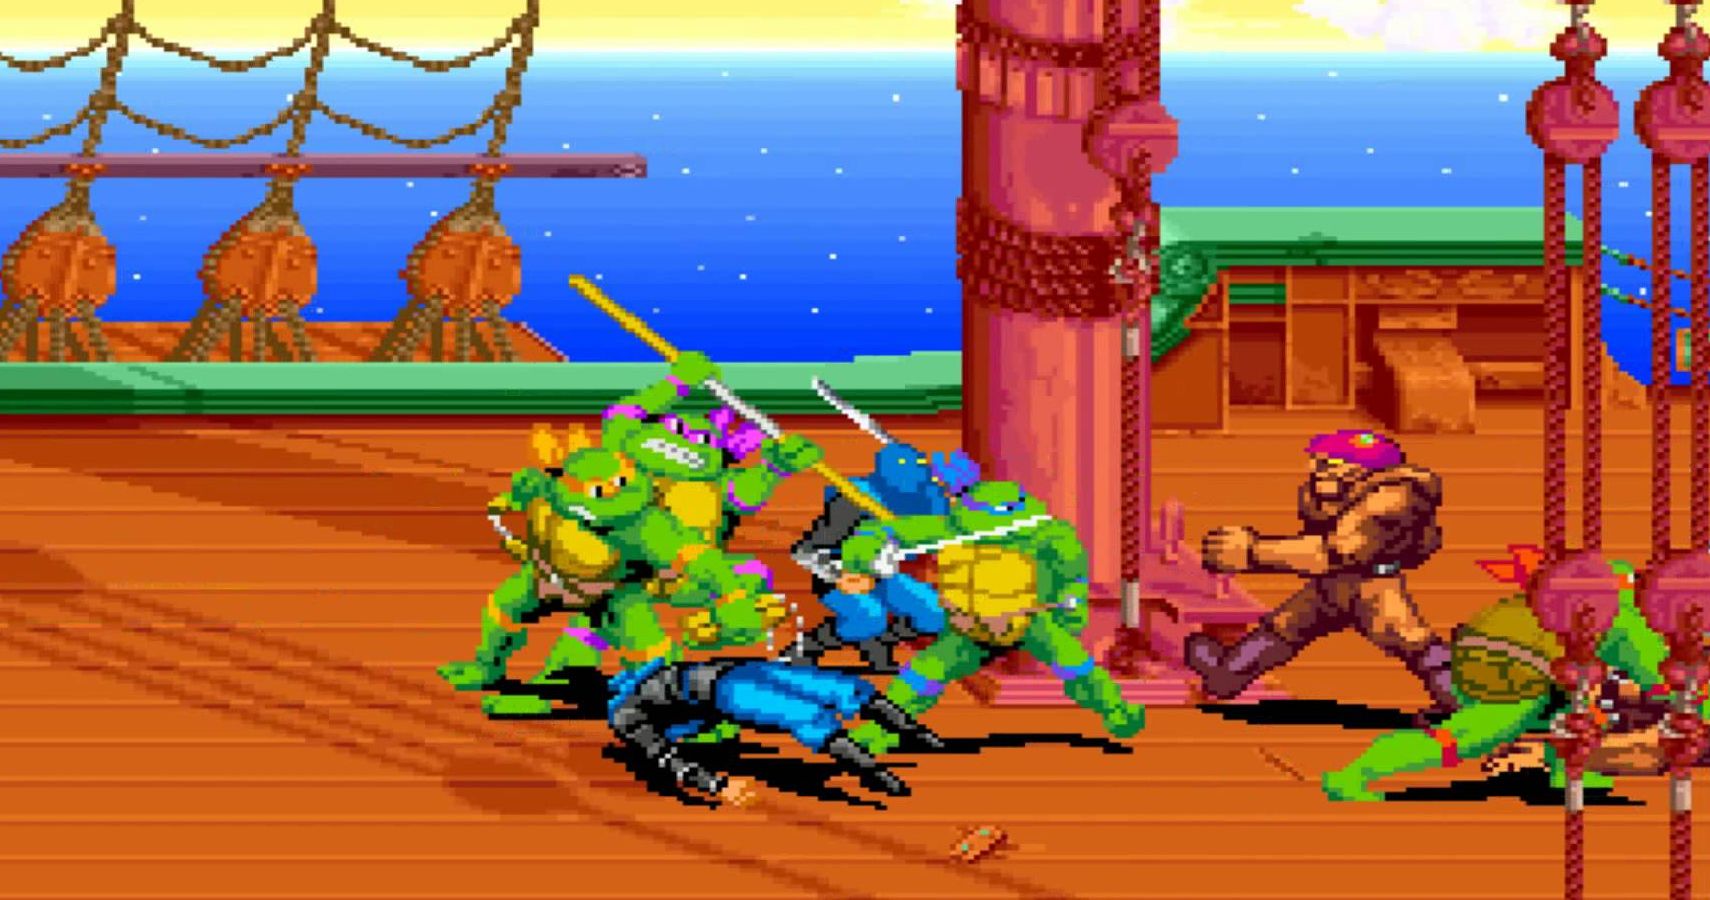 The 10 BEST Teenage Mutant Ninja Turtles Video Games 